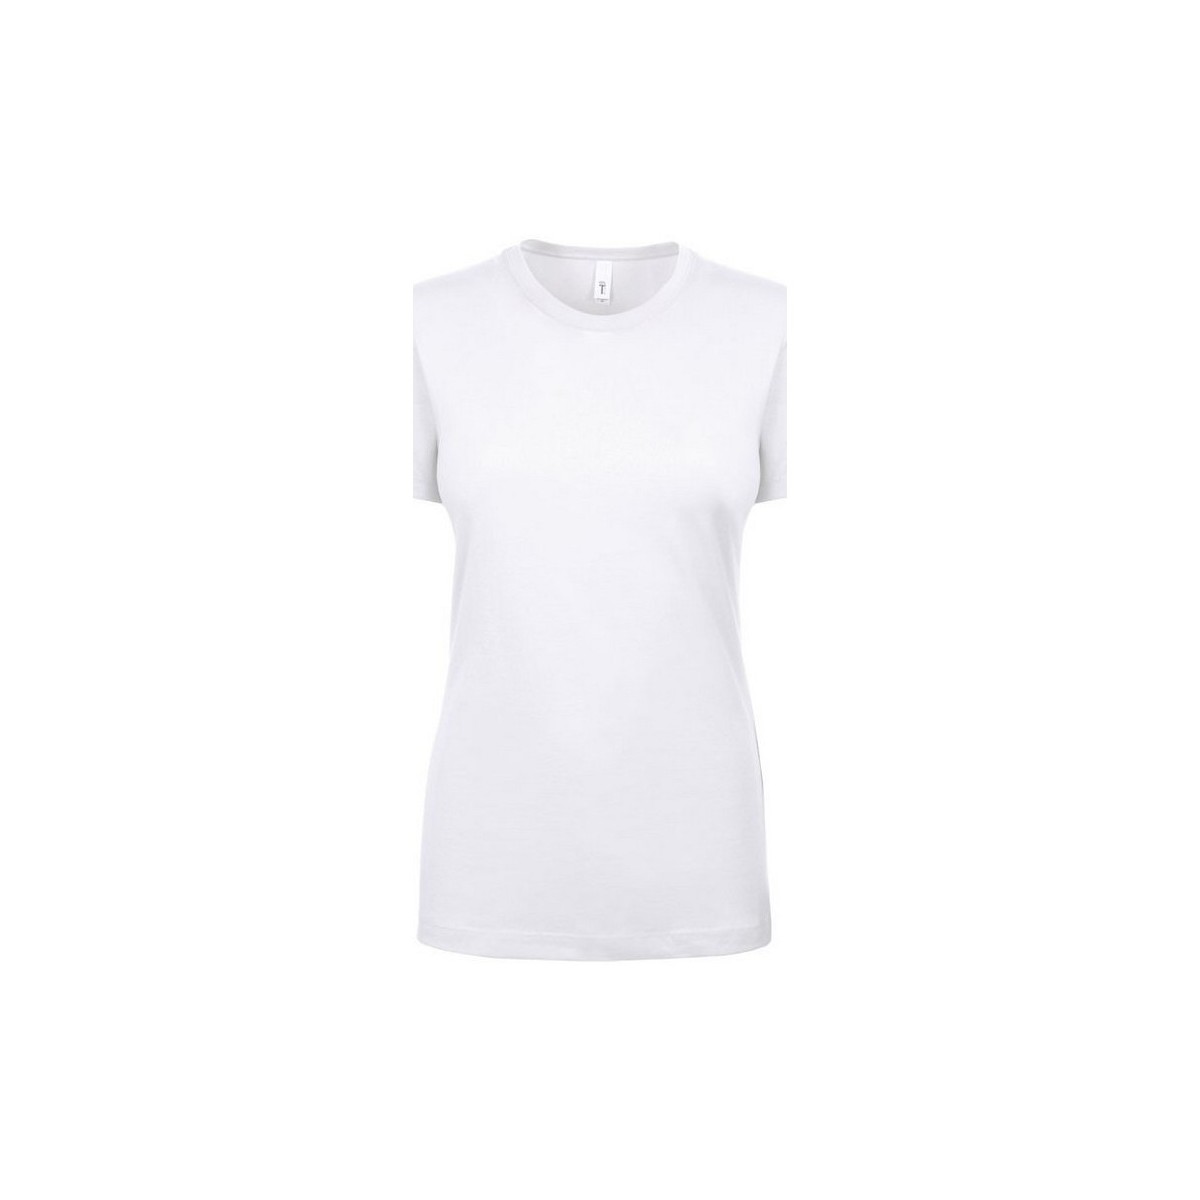 Vêtements Femme T-shirts manches longues Next Level Ideal Blanc